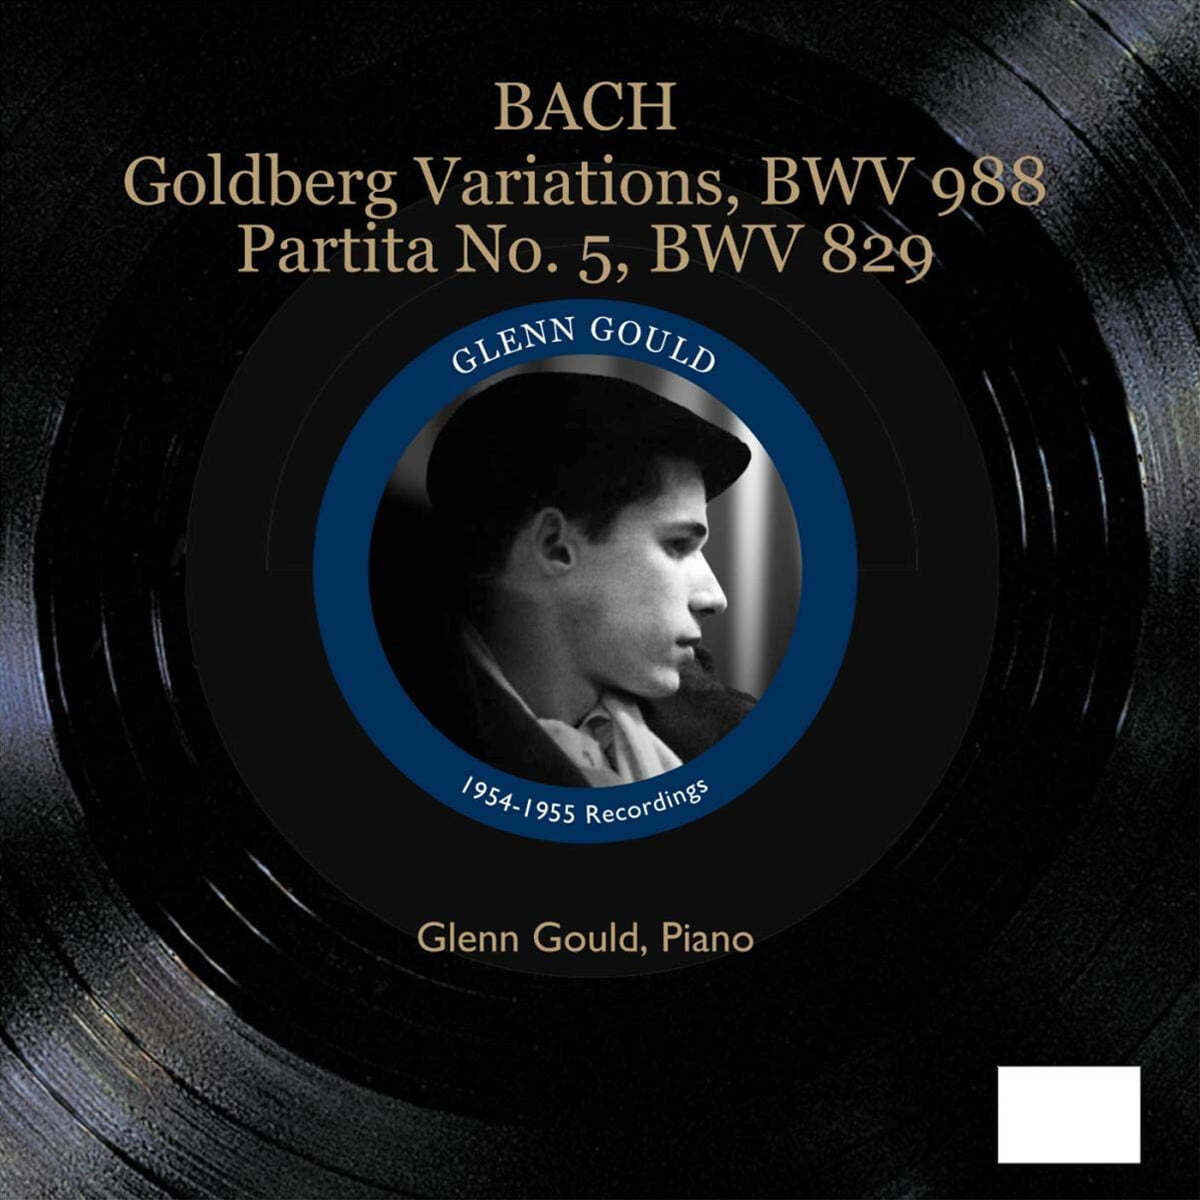 Glenn Gould 바흐: 골드베르크 변주곡, 파르티타 5번 [1954, 55년 녹음] - 글렌 굴드 (J.S.Bach: Goldberg Variations BWV988, Partita No.5 BWV829) 